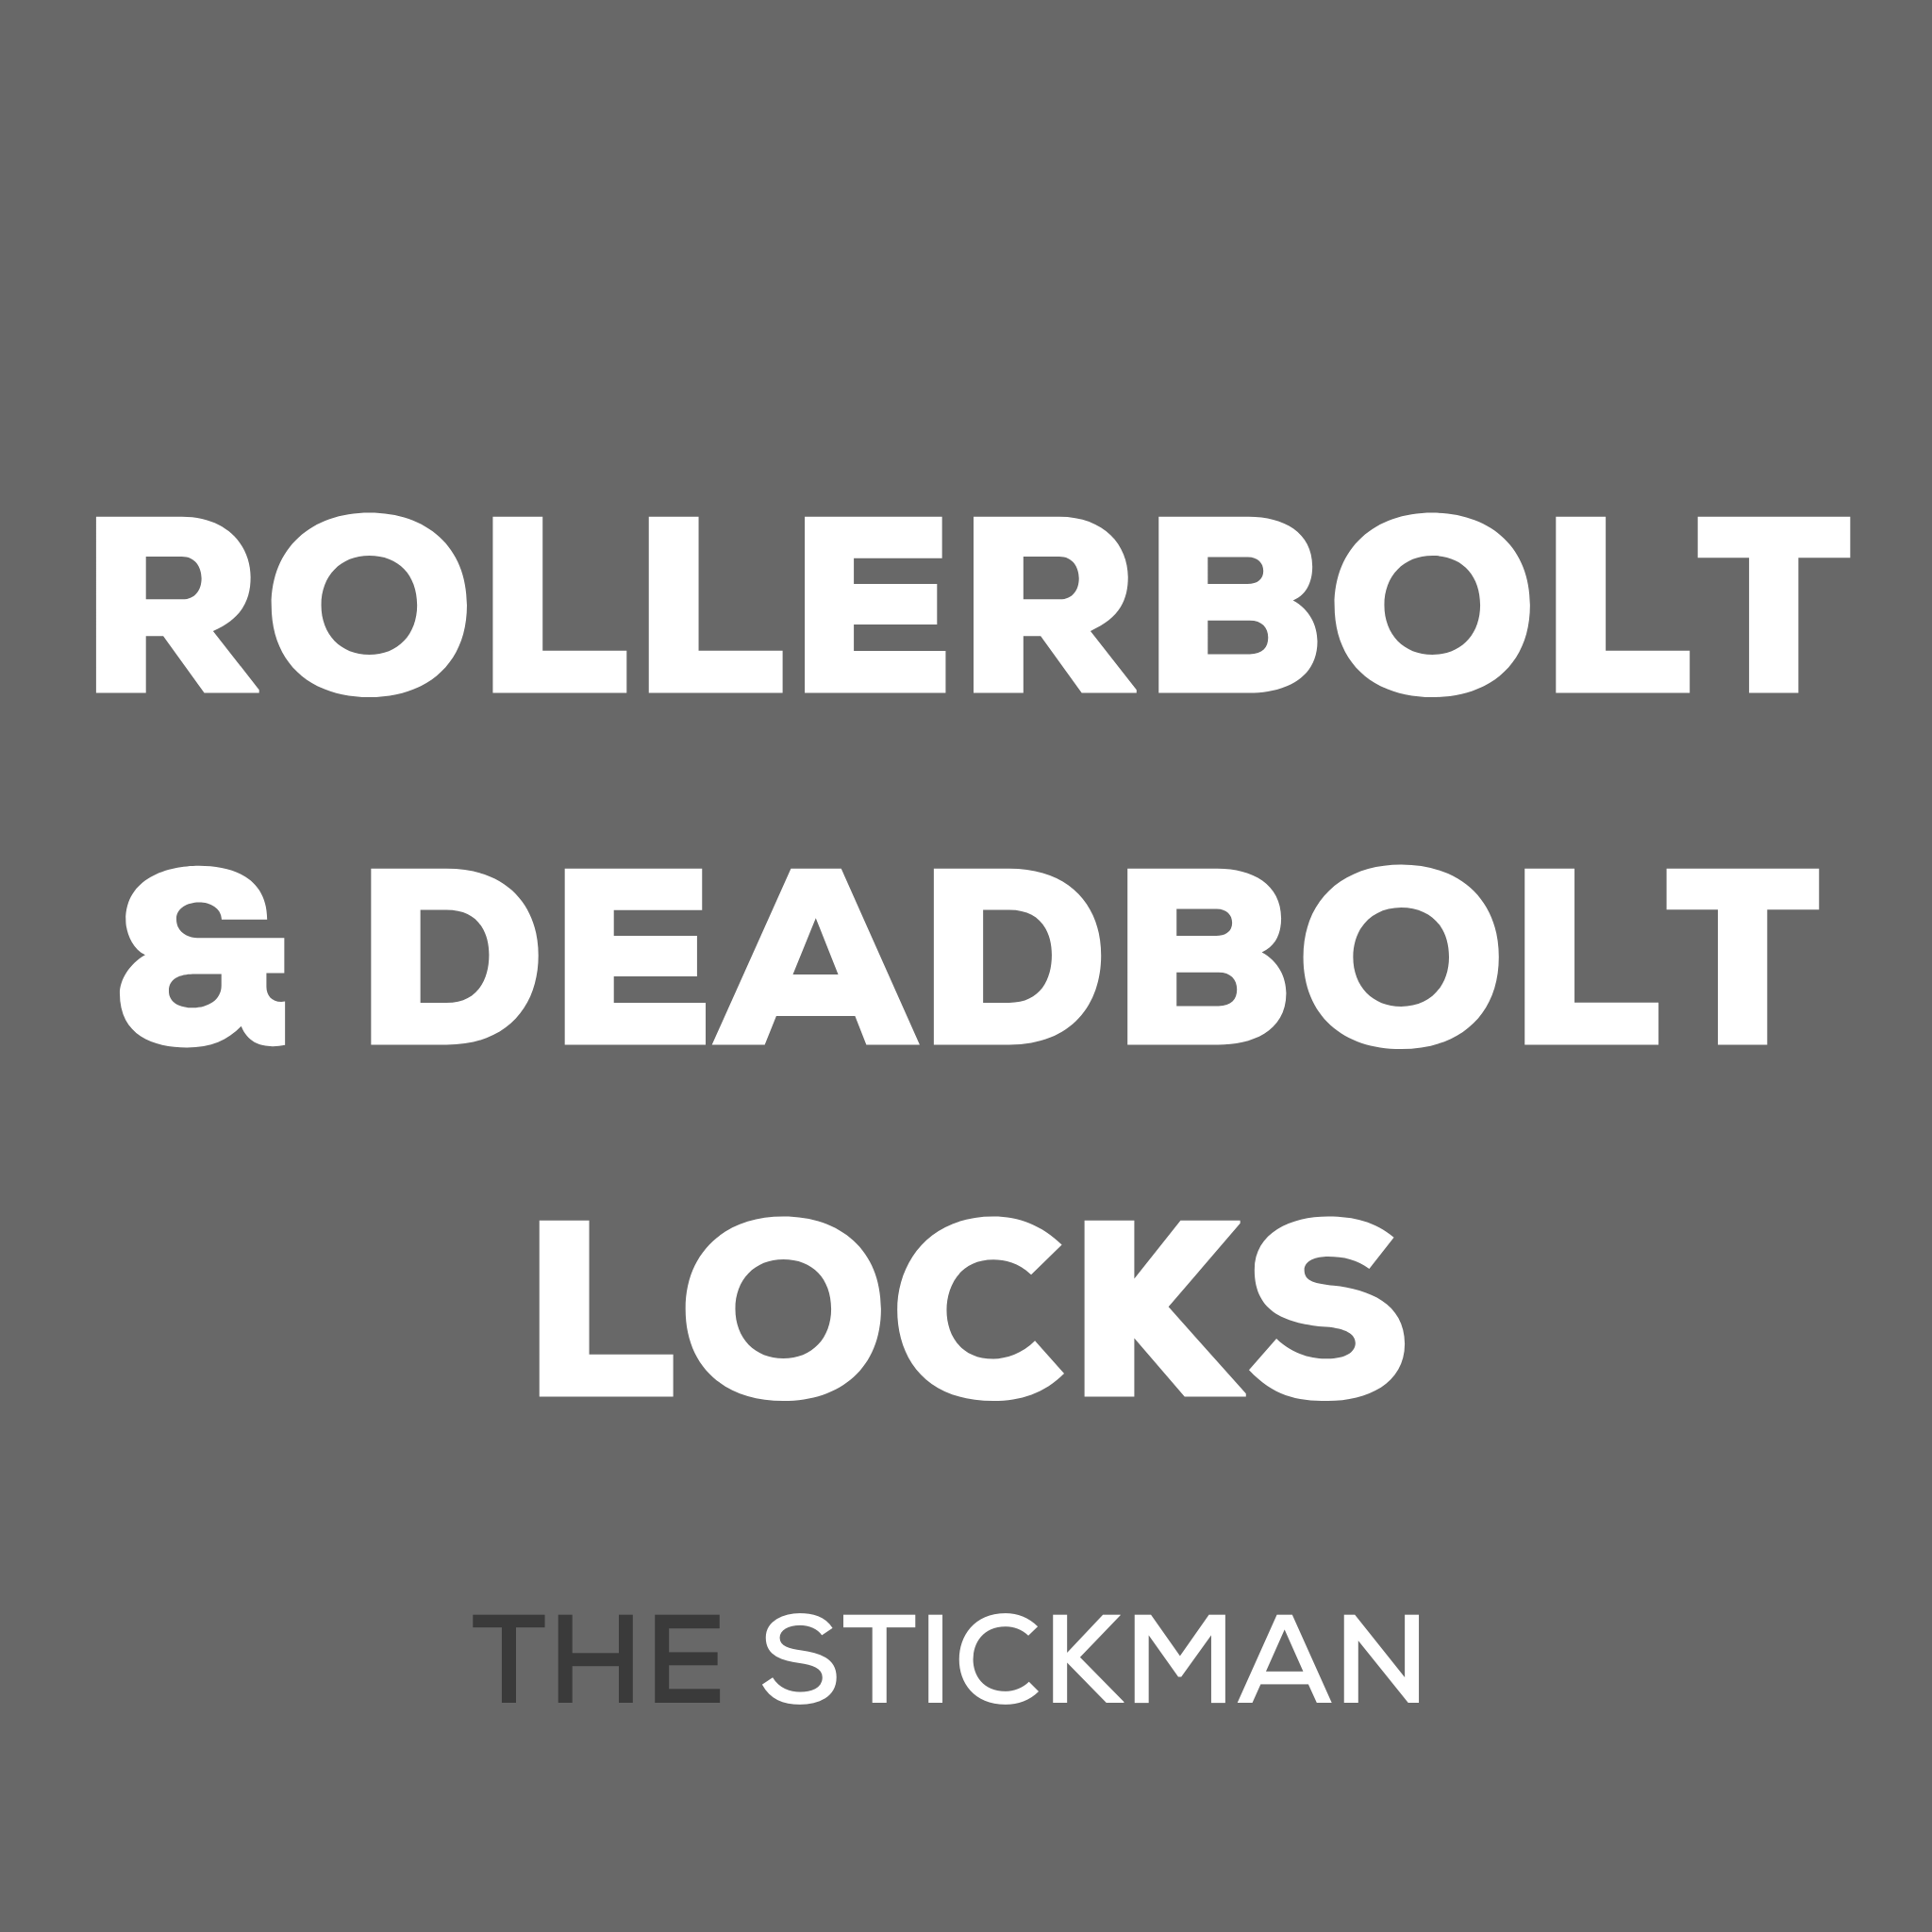 ROLLERBOLT & DEADBOLT LOCKS